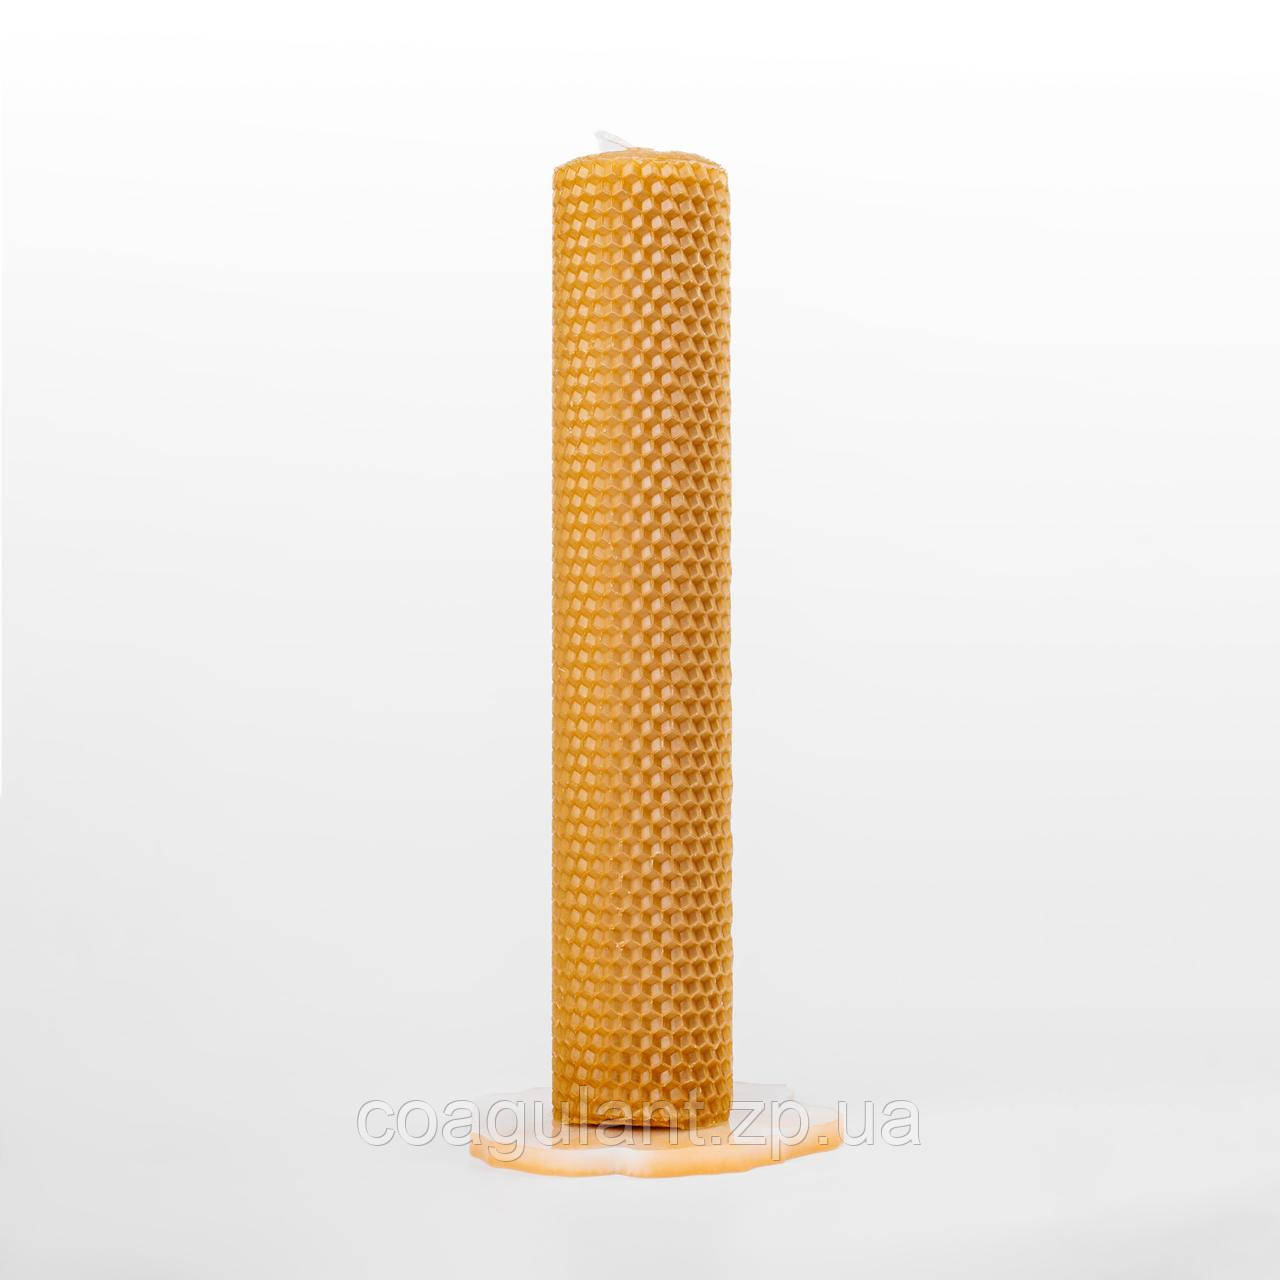 Інтер'єрна медова свічка натуральна 26 см